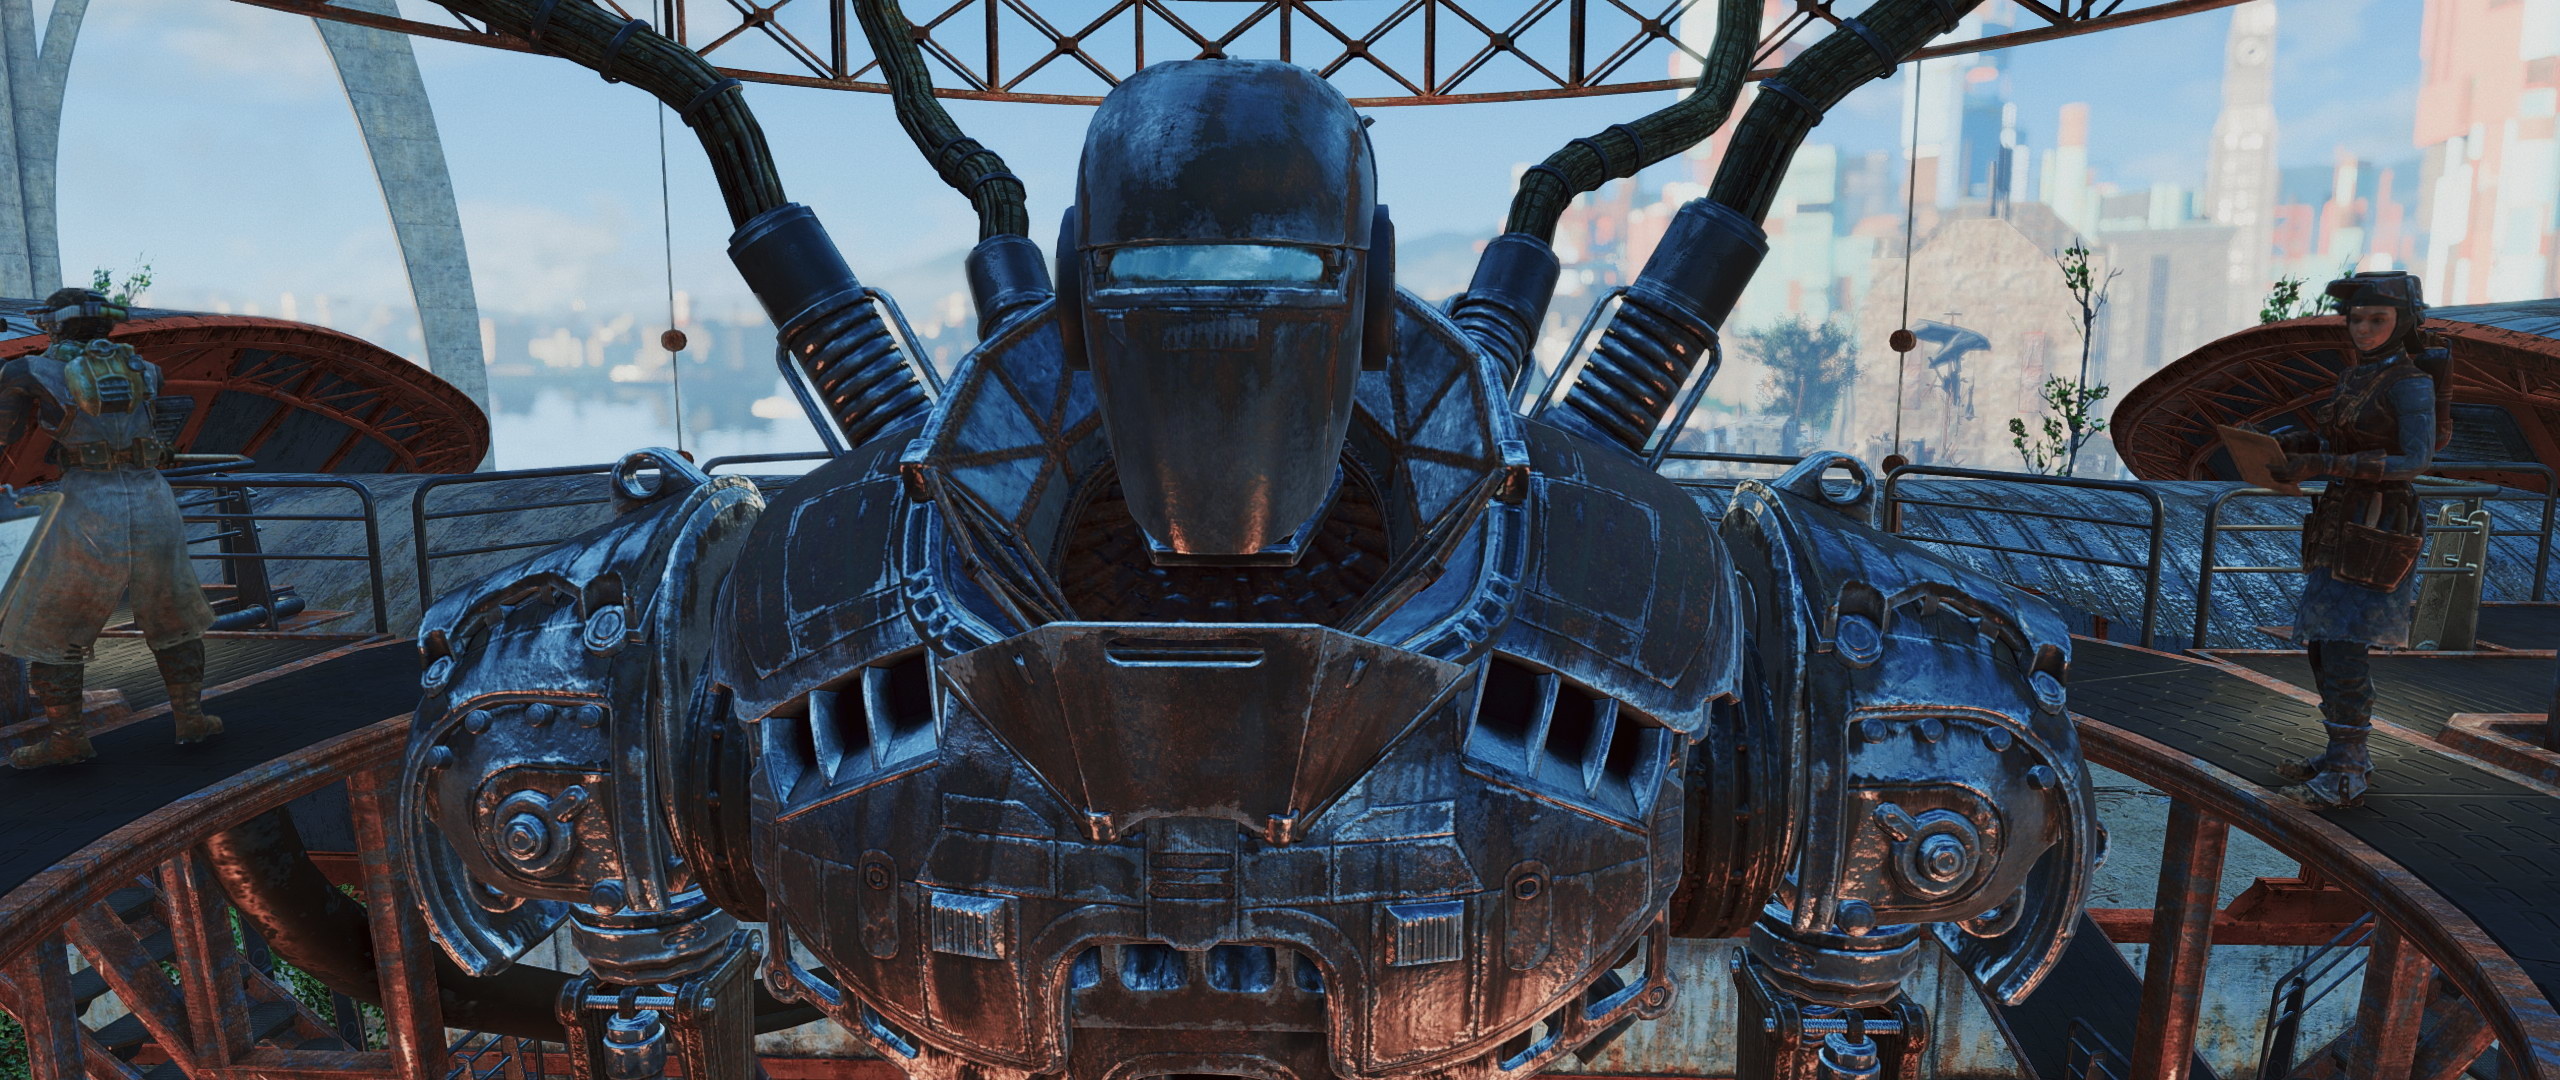 Liberty Prime, Fallout 4 Nexus mods, Game character, Giant robot, 2560x1080 Dual Screen Desktop